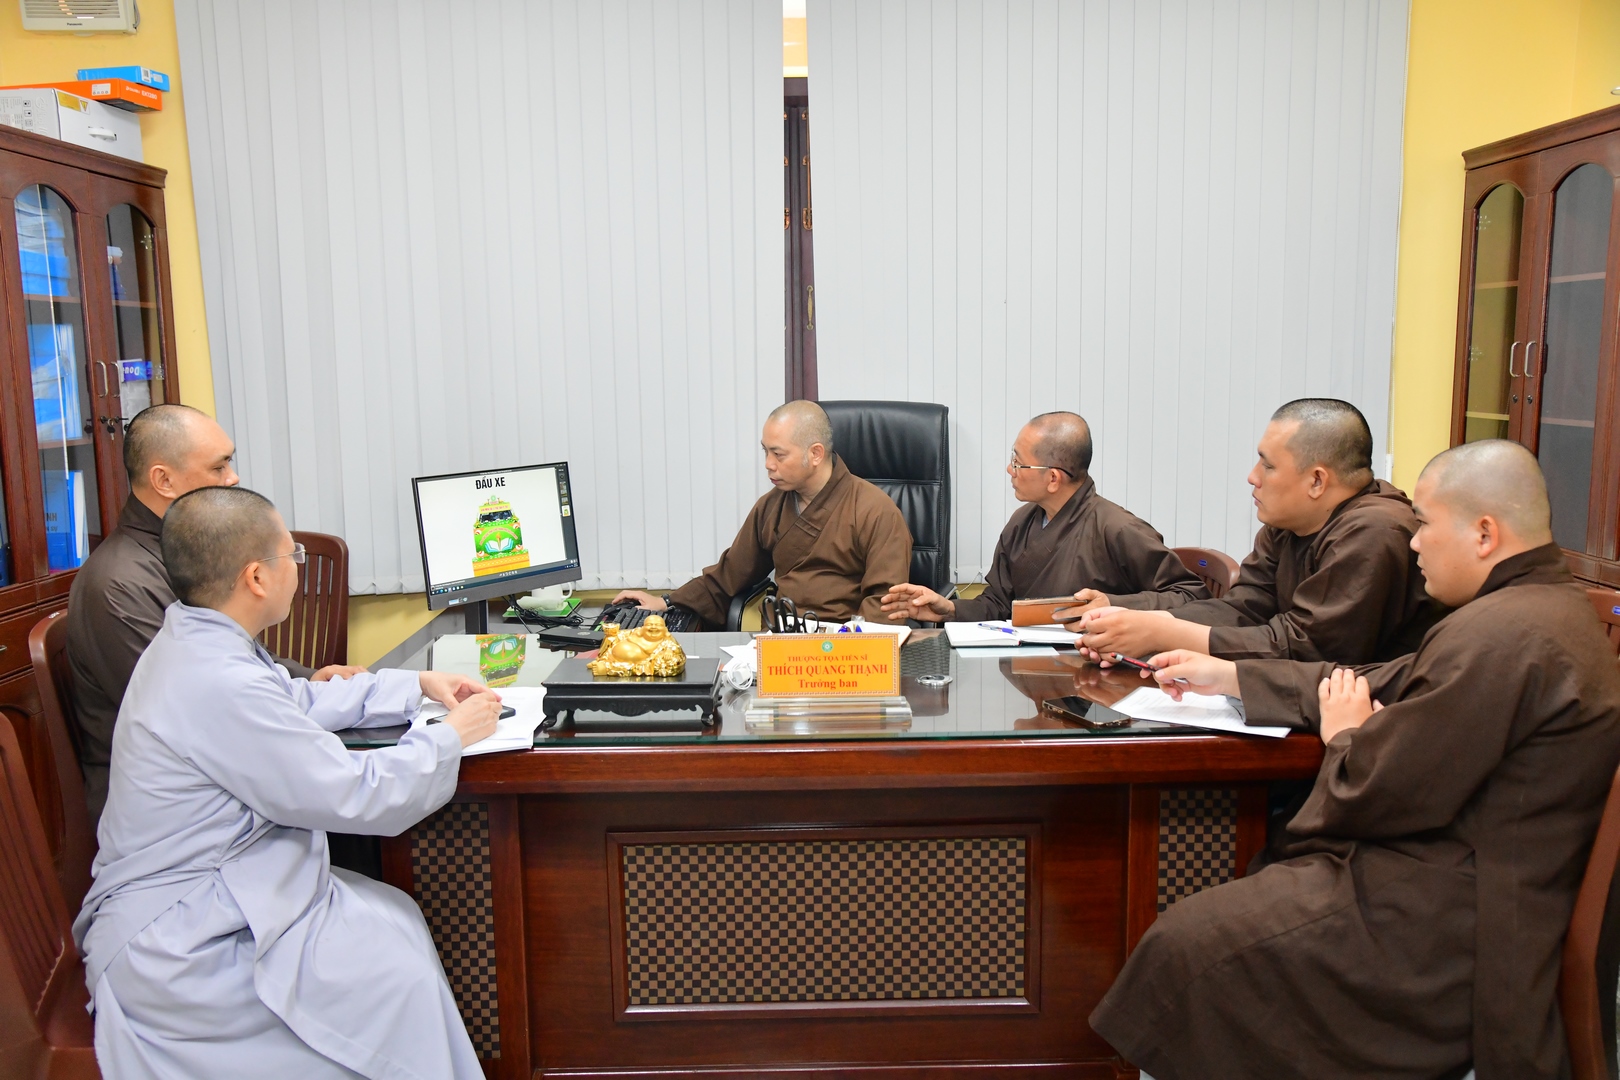 Ban Giáo dục Phật giáo TP.HCM triển khai công tác thiết trí xe hoa chào mừng Phật đản PL 2567, DL 2023